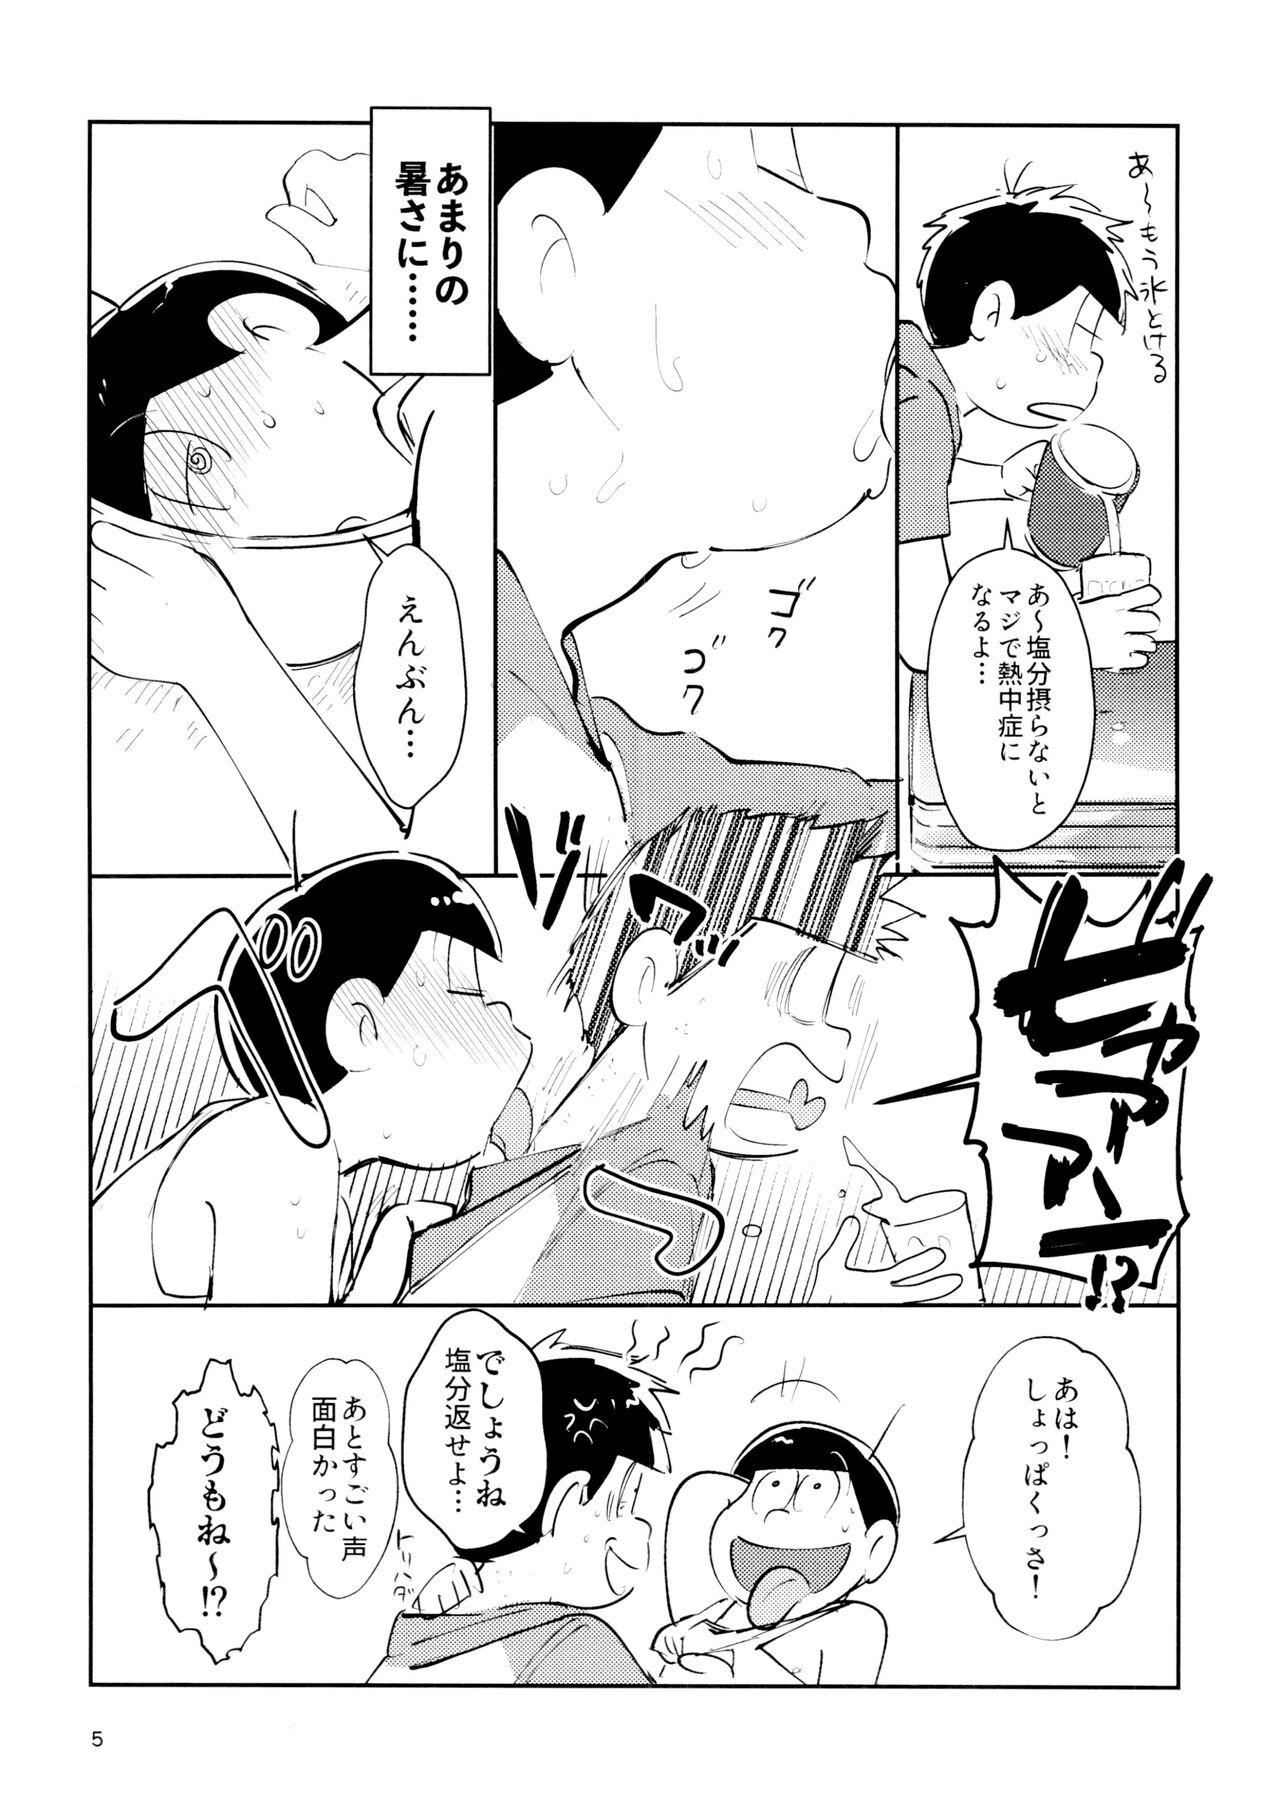 Ex Girlfriend Zatsu Shinkiro's - Osomatsu san Twistys - Page 5